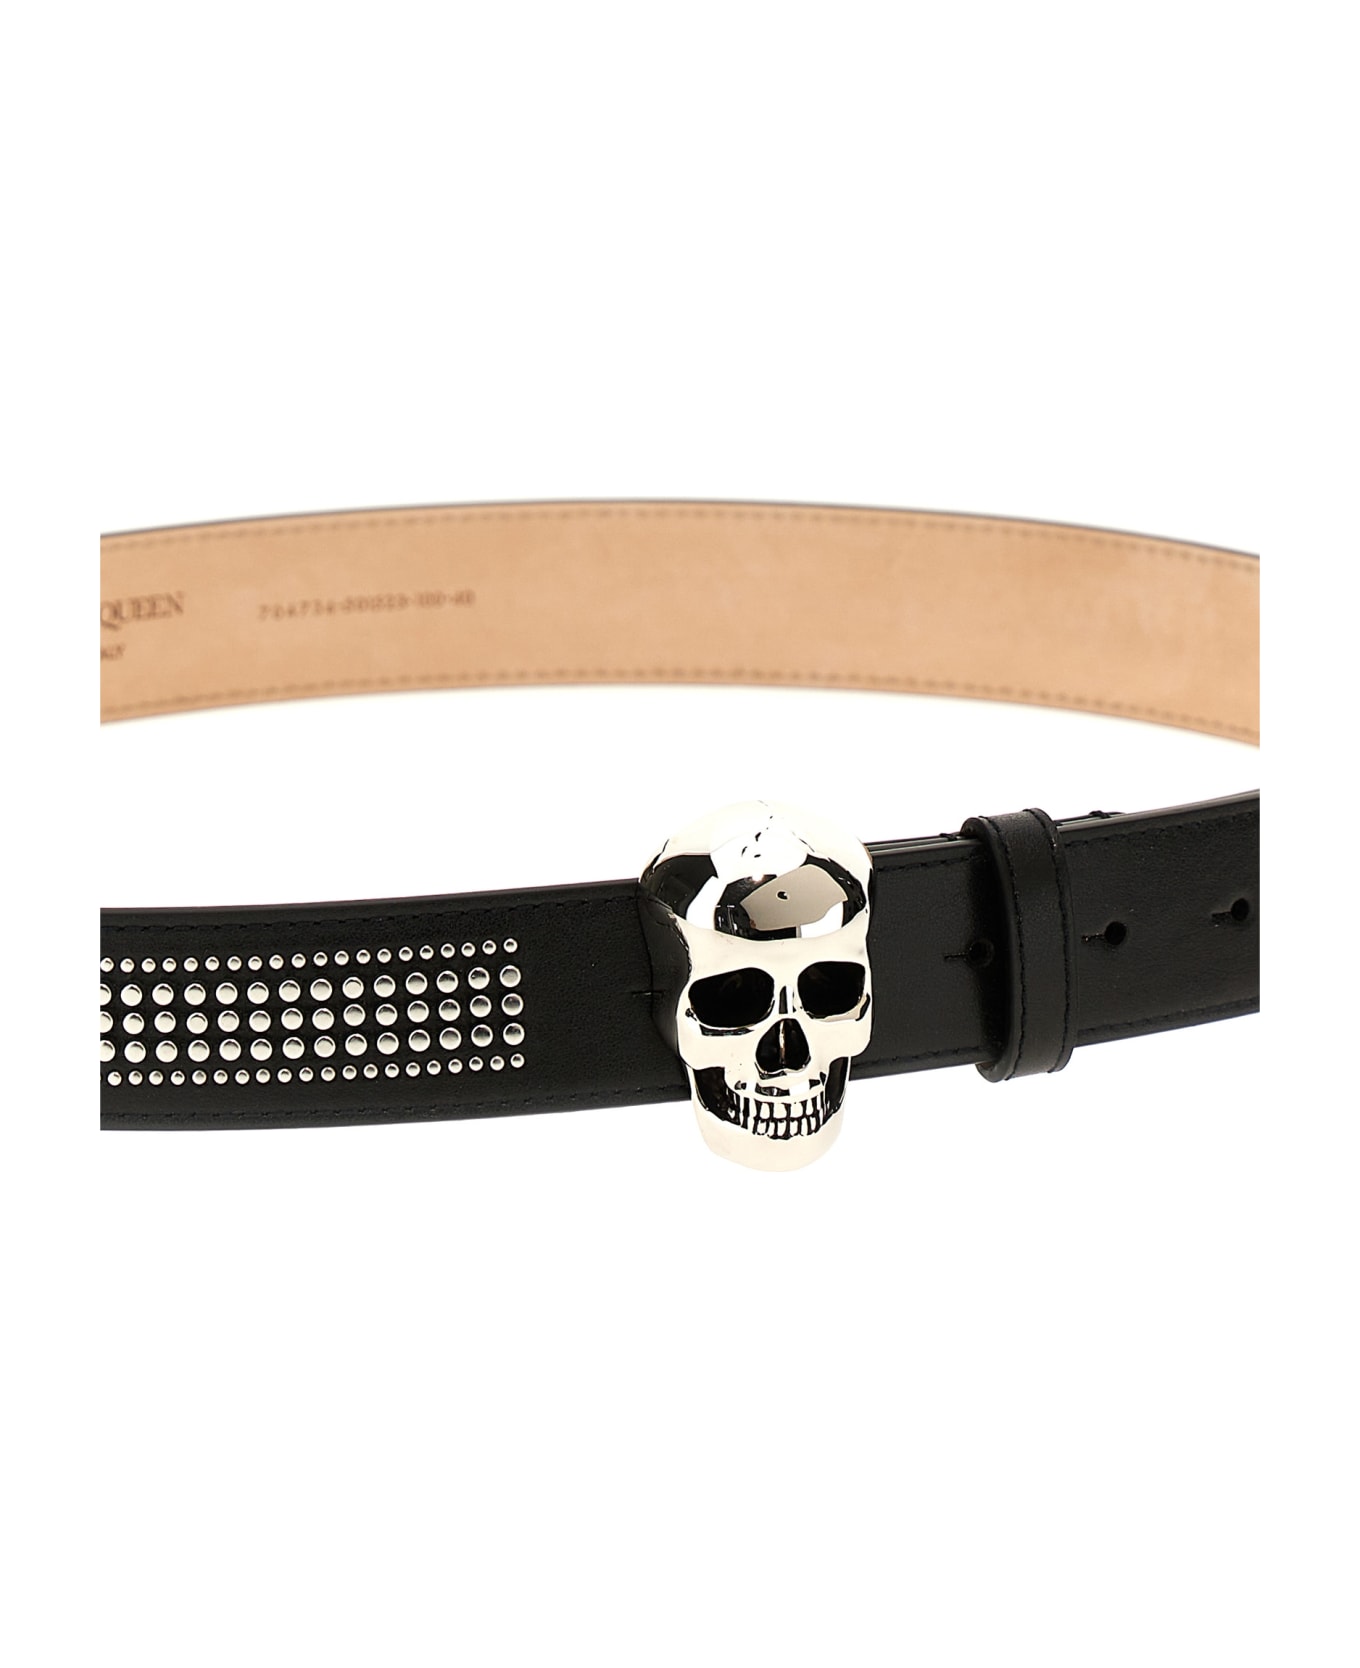 Alexander McQueen Skull Belt With Studs - BLACK